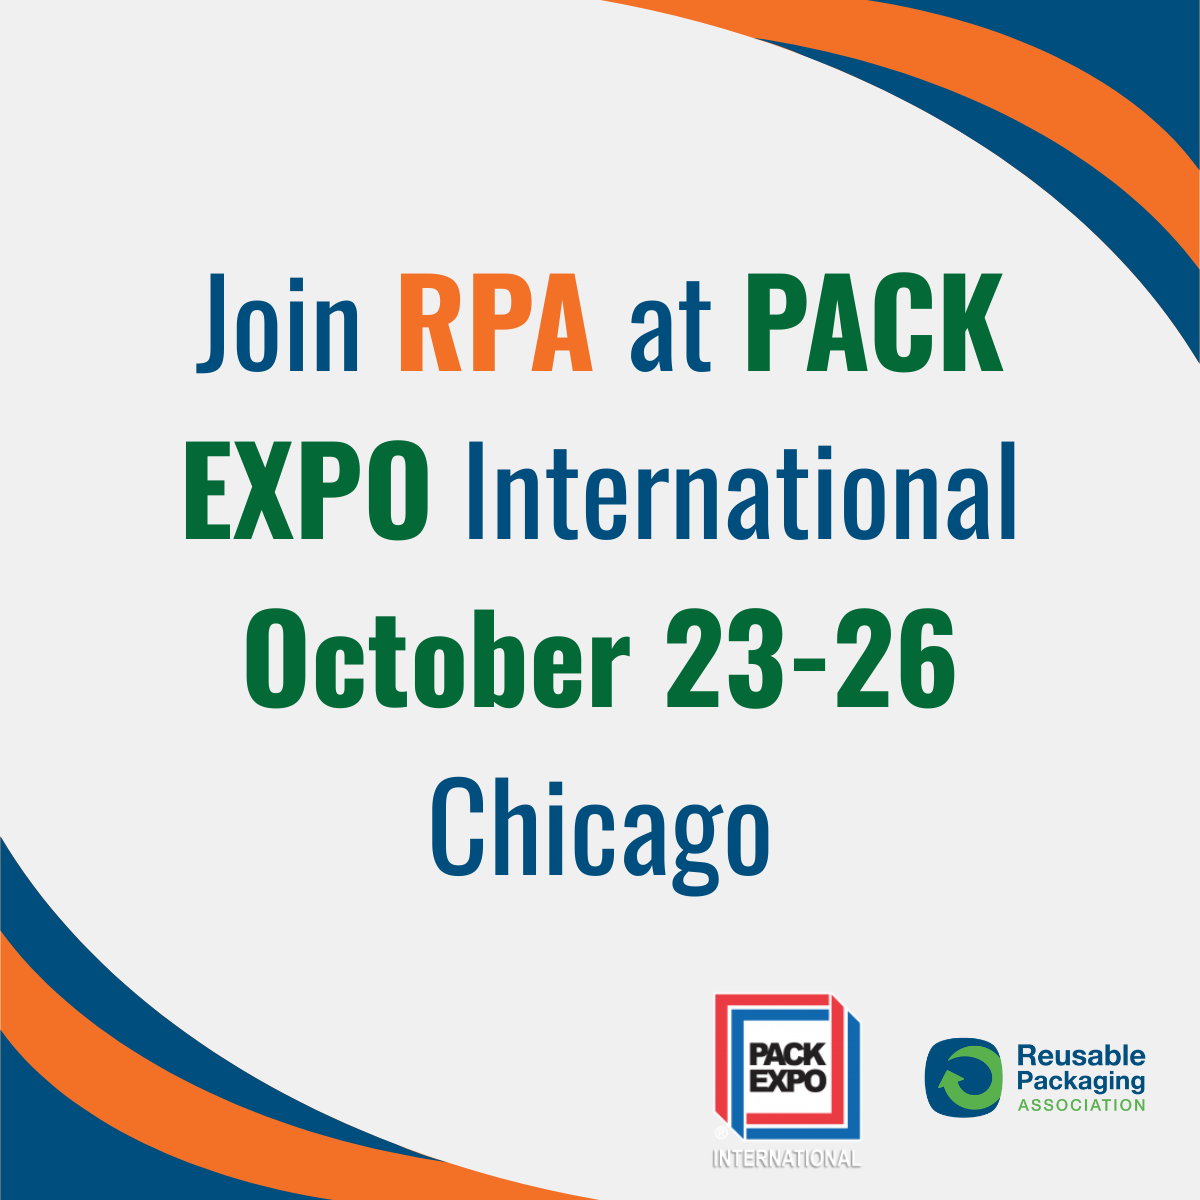 Reusable Packaging Association Set to Host Record-Breaking Reusable Packaging Event at PACK EXPO International